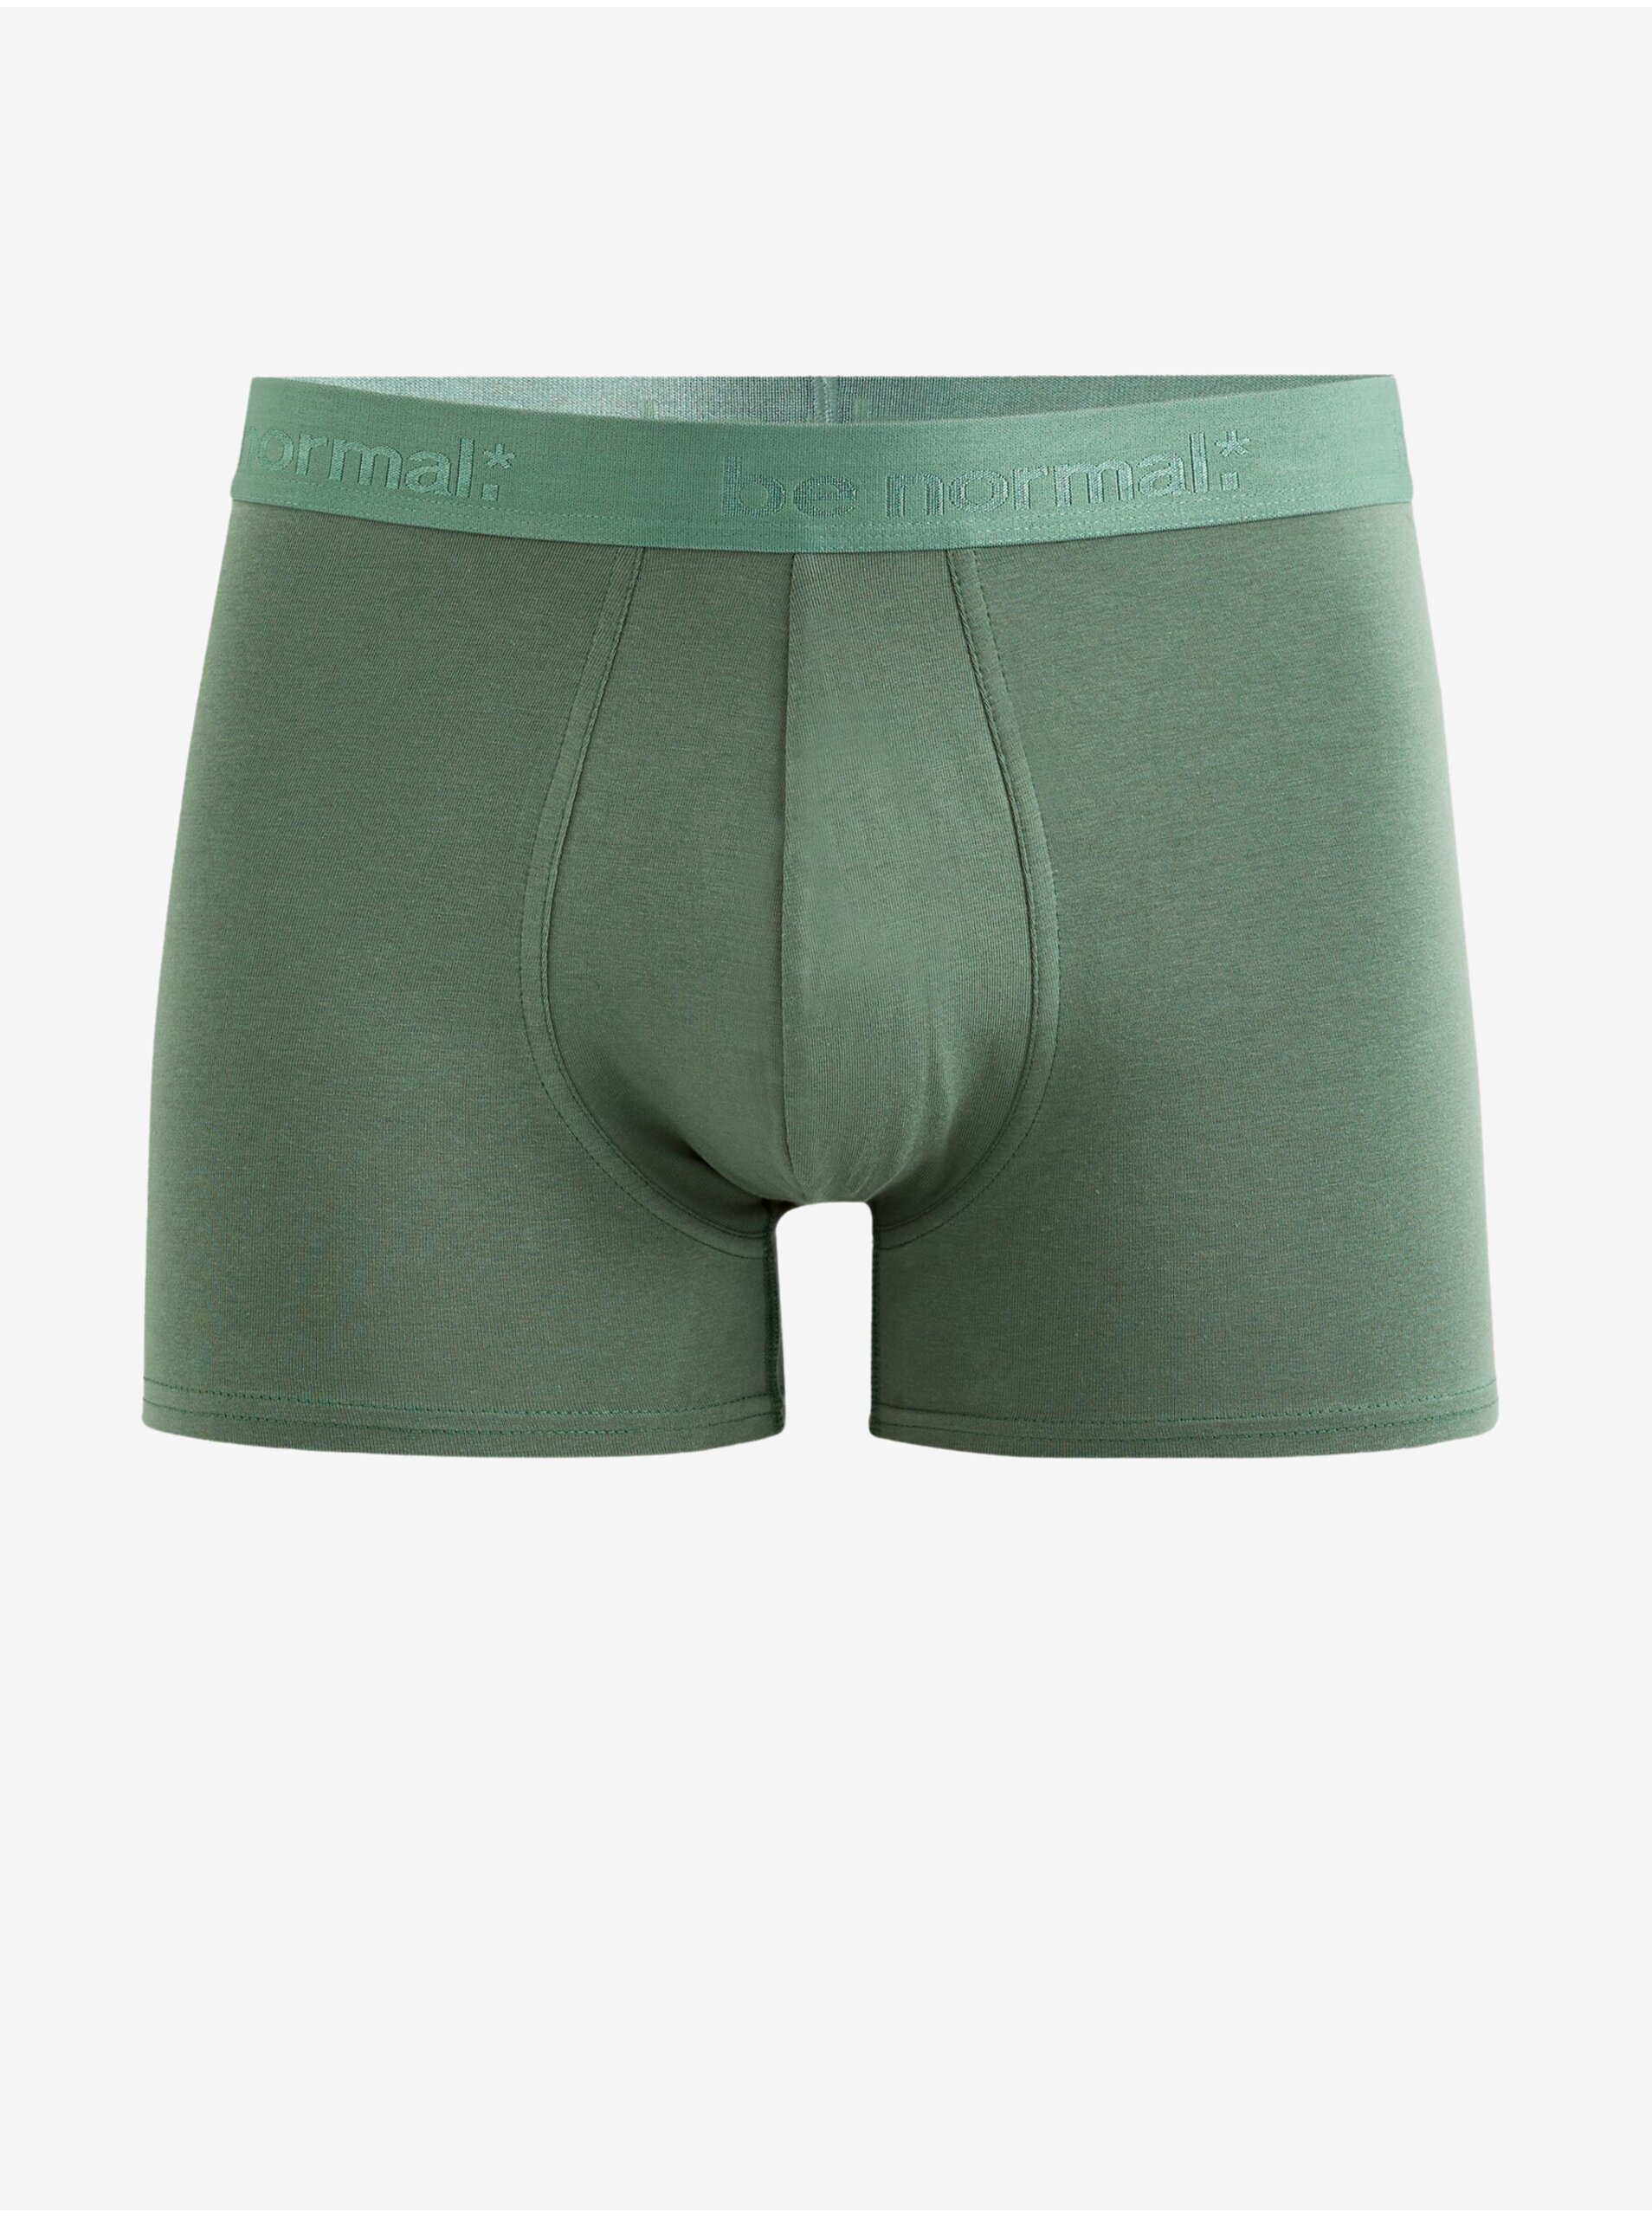 Lacno Zelené pánske boxerky Celio Binormal